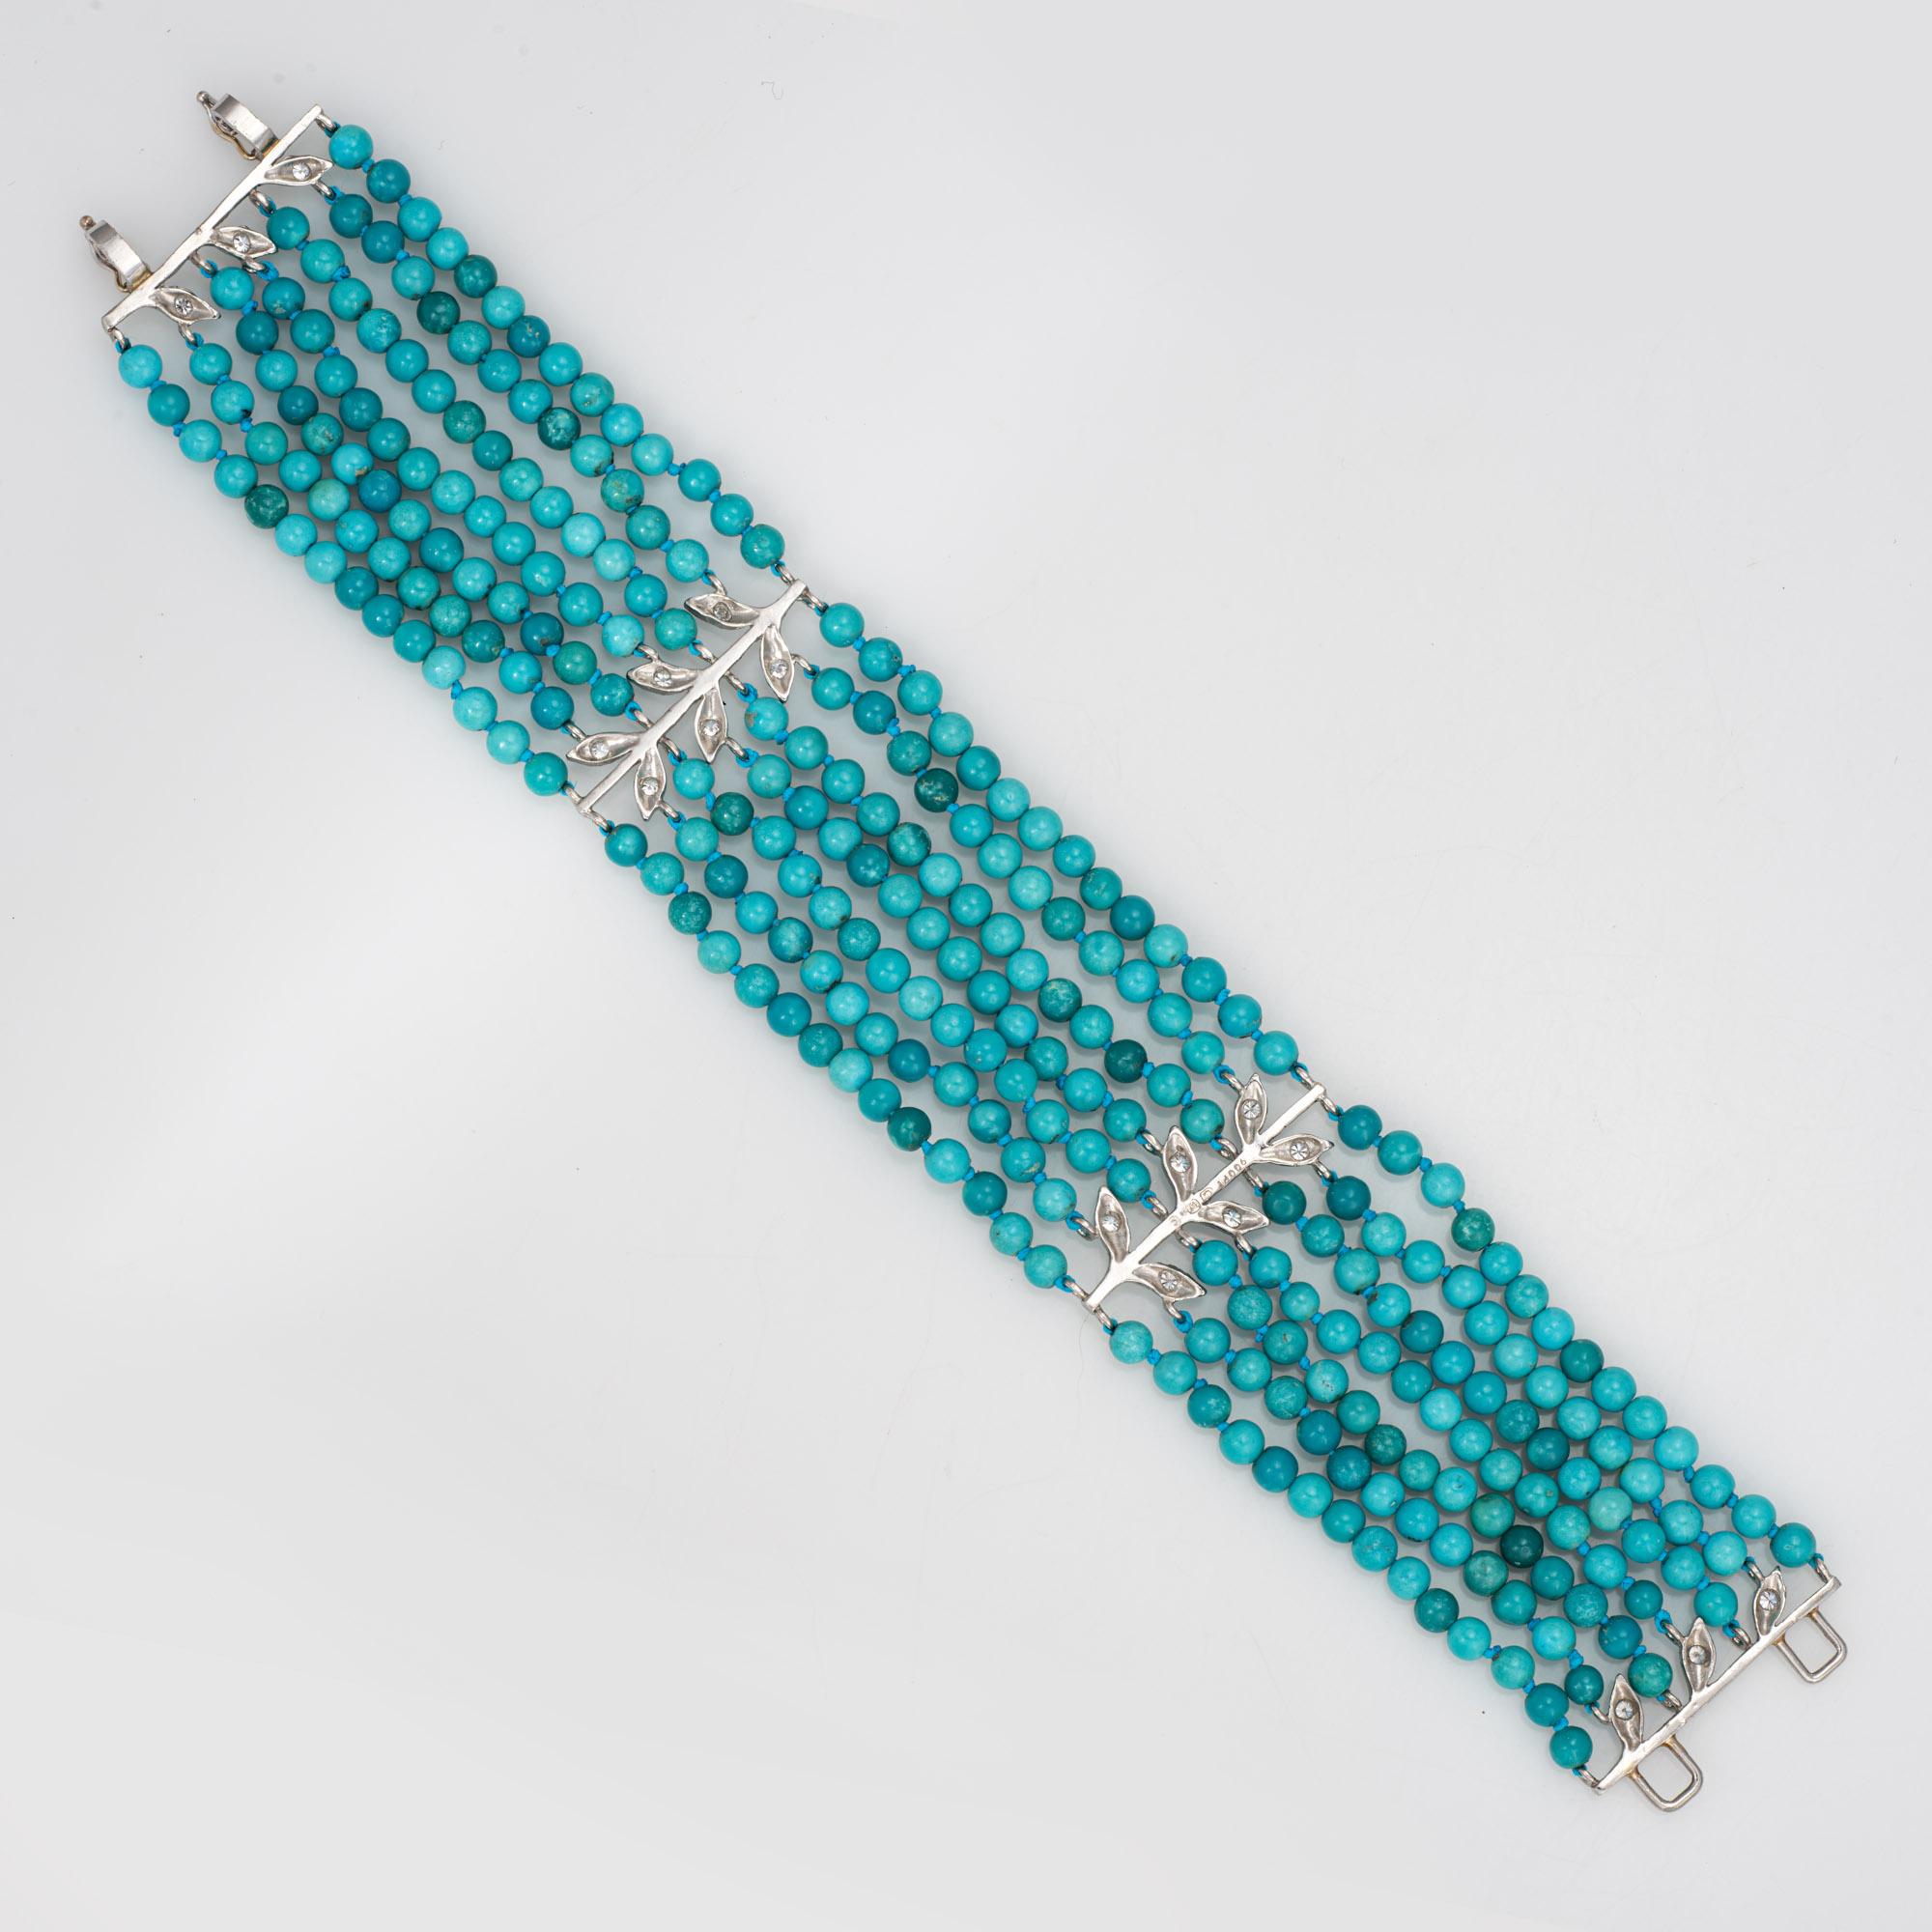 Feines, detailliertes, gebrauchtes Cathy Waterman Armband mit 7 Strängen aus Türkis und Diamanten, gefertigt aus 900er Platin. 

Sieben Stränge mit türkisfarbenen Perlen von je 3,5 mm. Die Diamanten haben insgesamt schätzungsweise 0,18 Karat